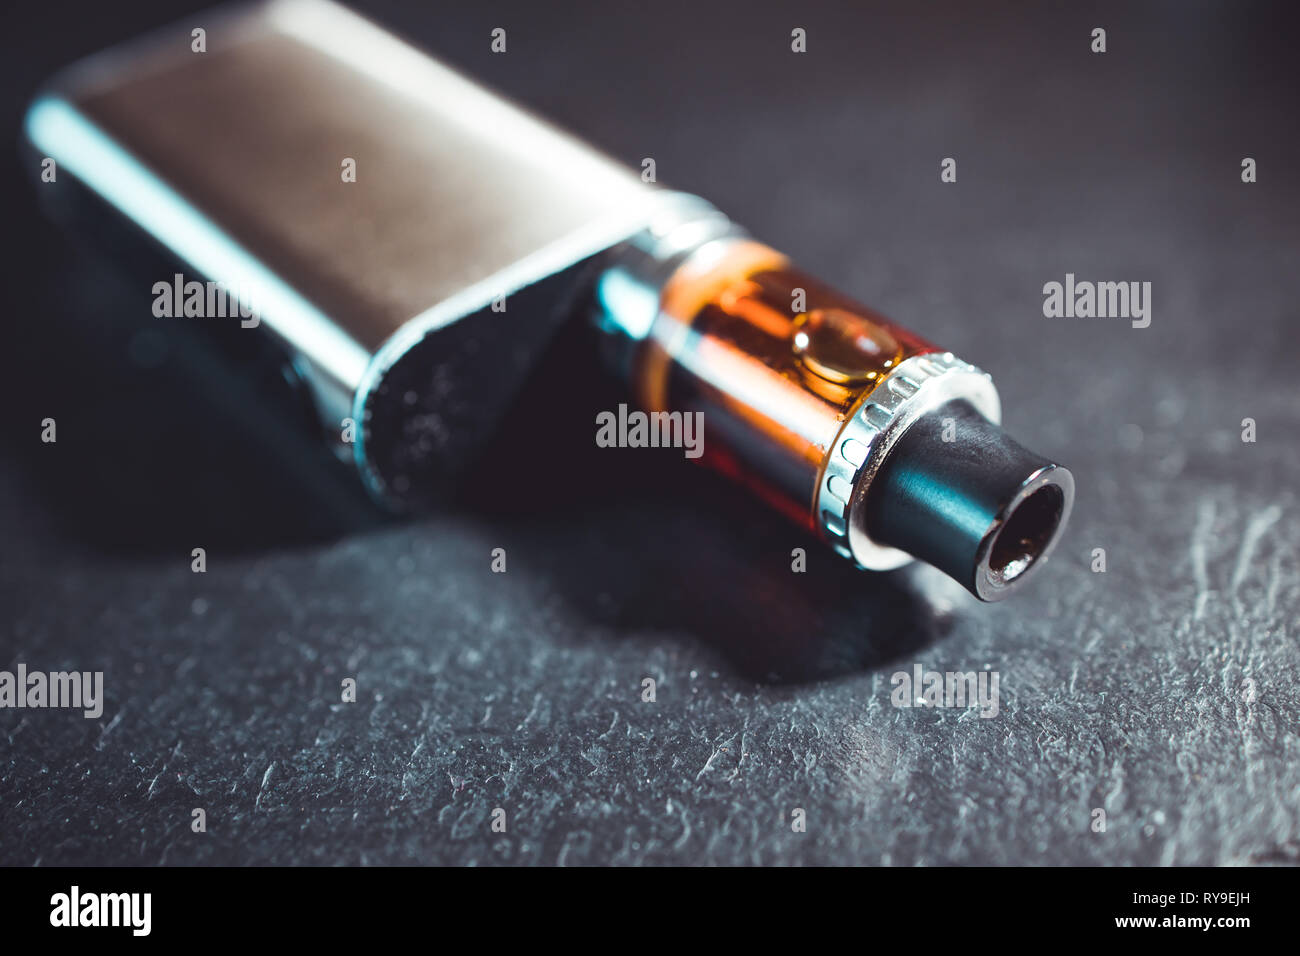 Vape metallo pen sigaretta elettronica con vaping sfondo scuro Foto Stock